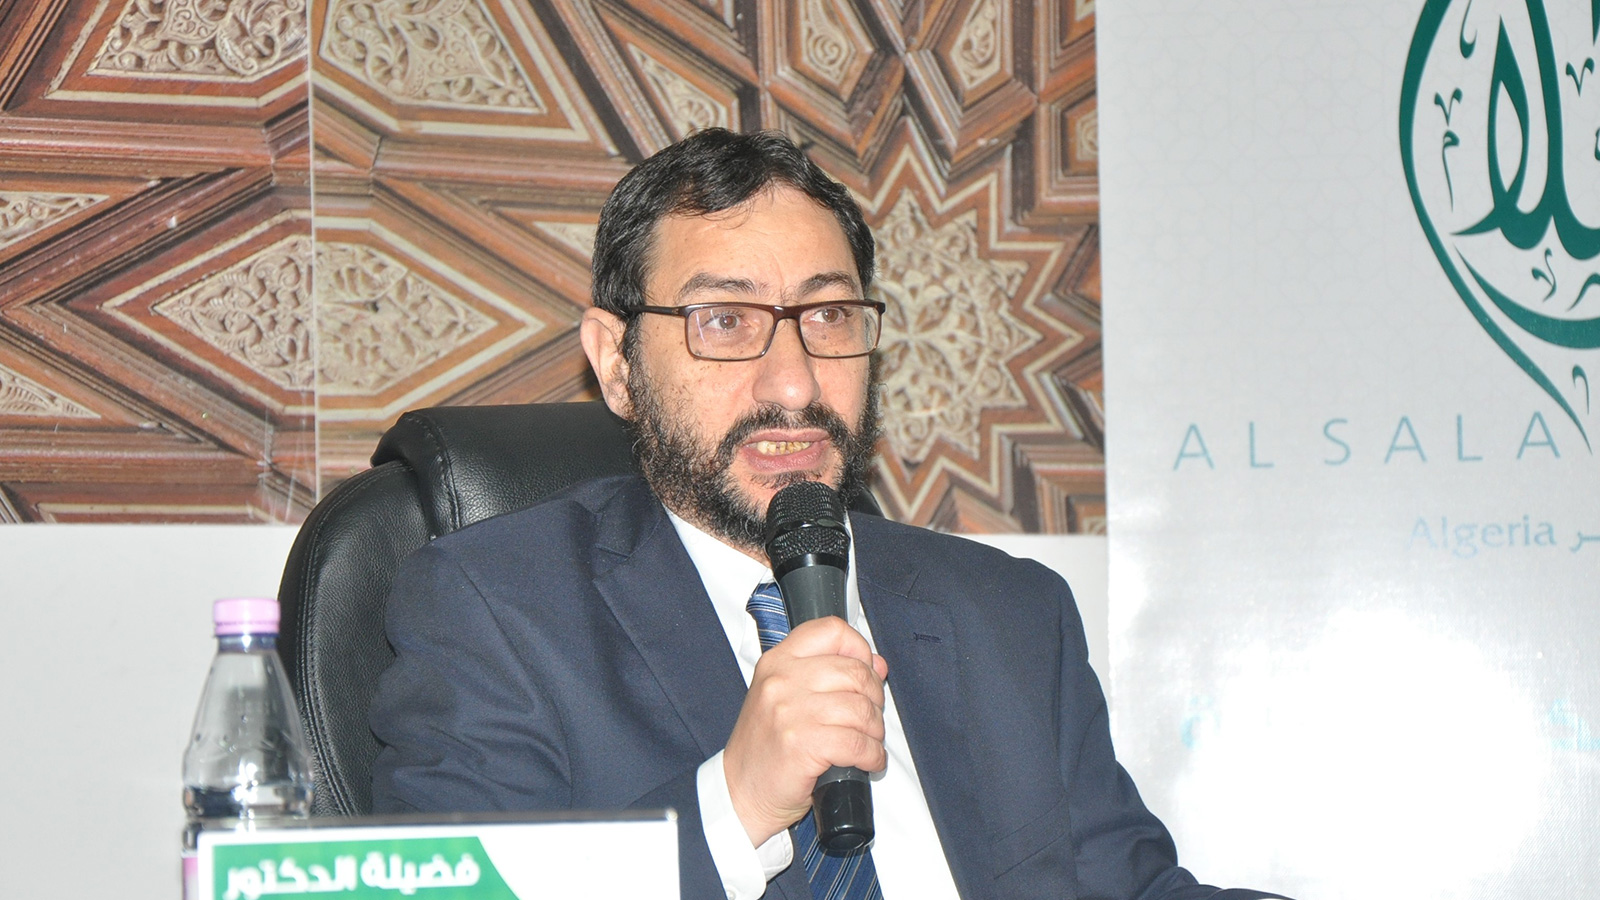 ‪‬ حيدر: القطاع البنكي الإسلامي في الجزائر لا يزال متواضعا(الجزيرة)